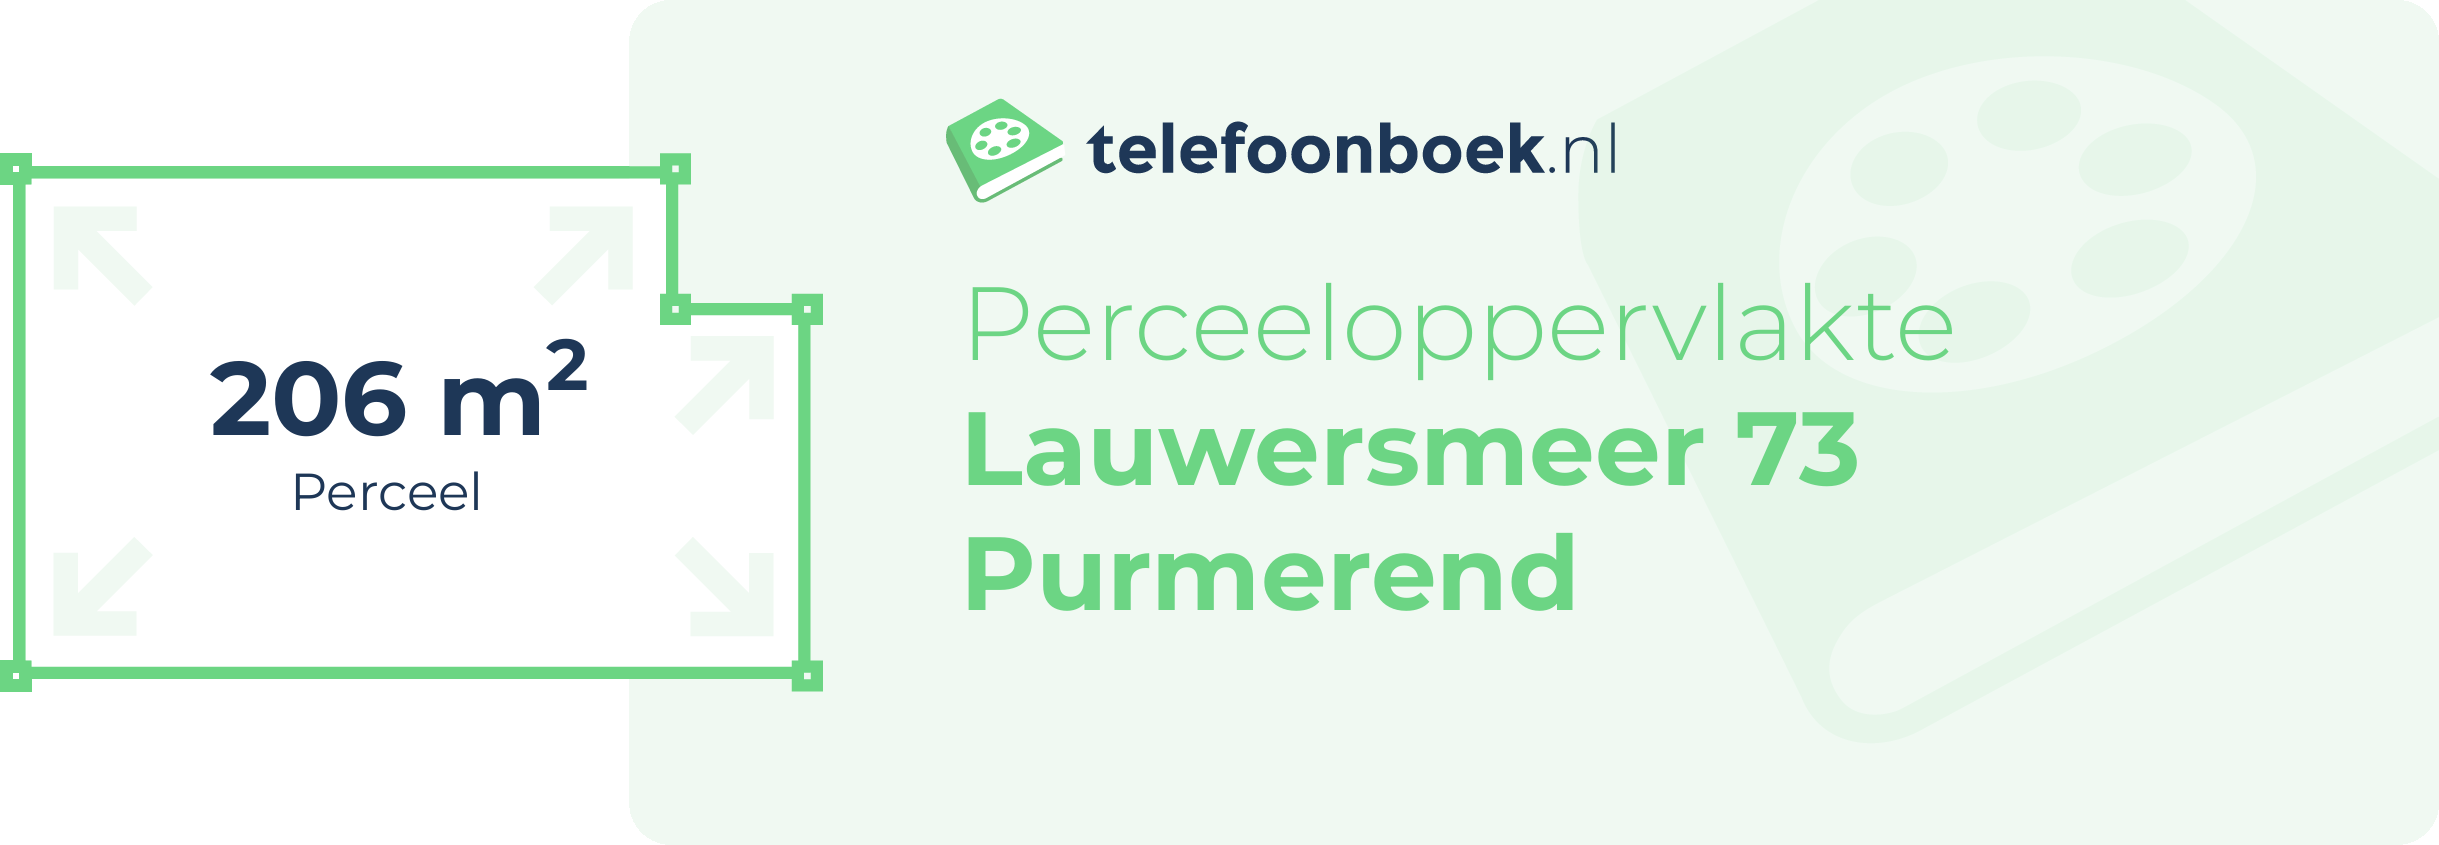 Perceeloppervlakte Lauwersmeer 73 Purmerend